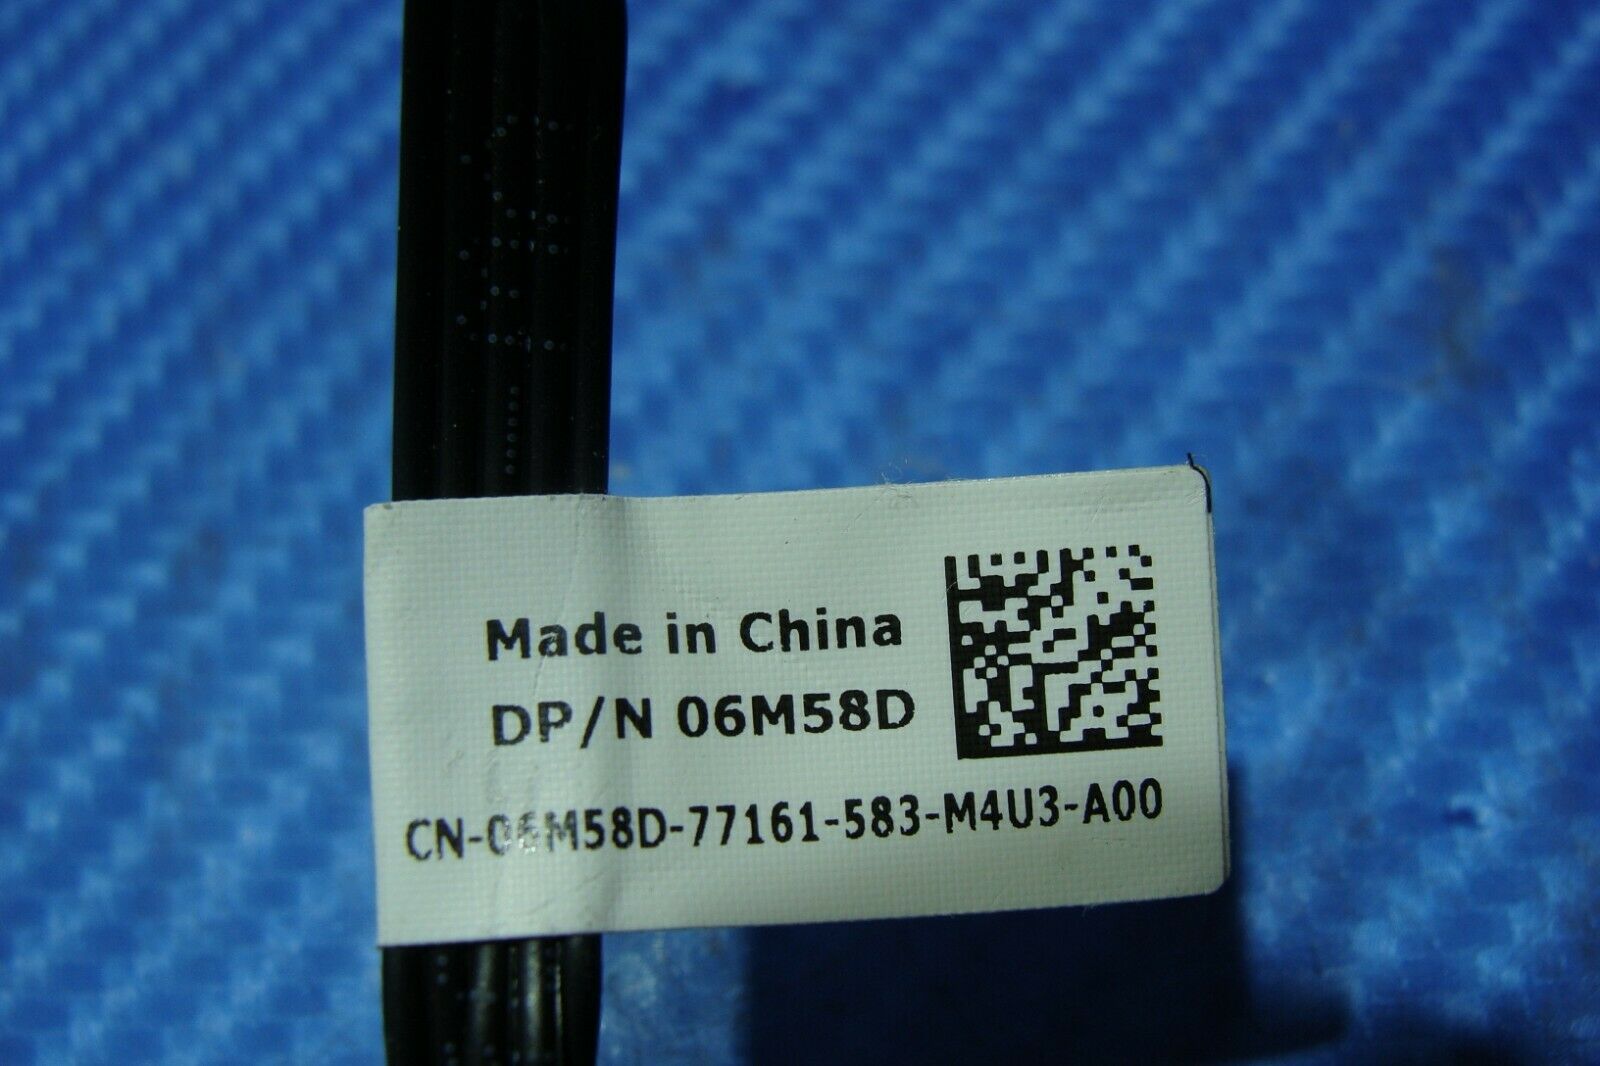 Dell Precision 3420 Genuine Desktop Power Button Cable 6M58D Dell